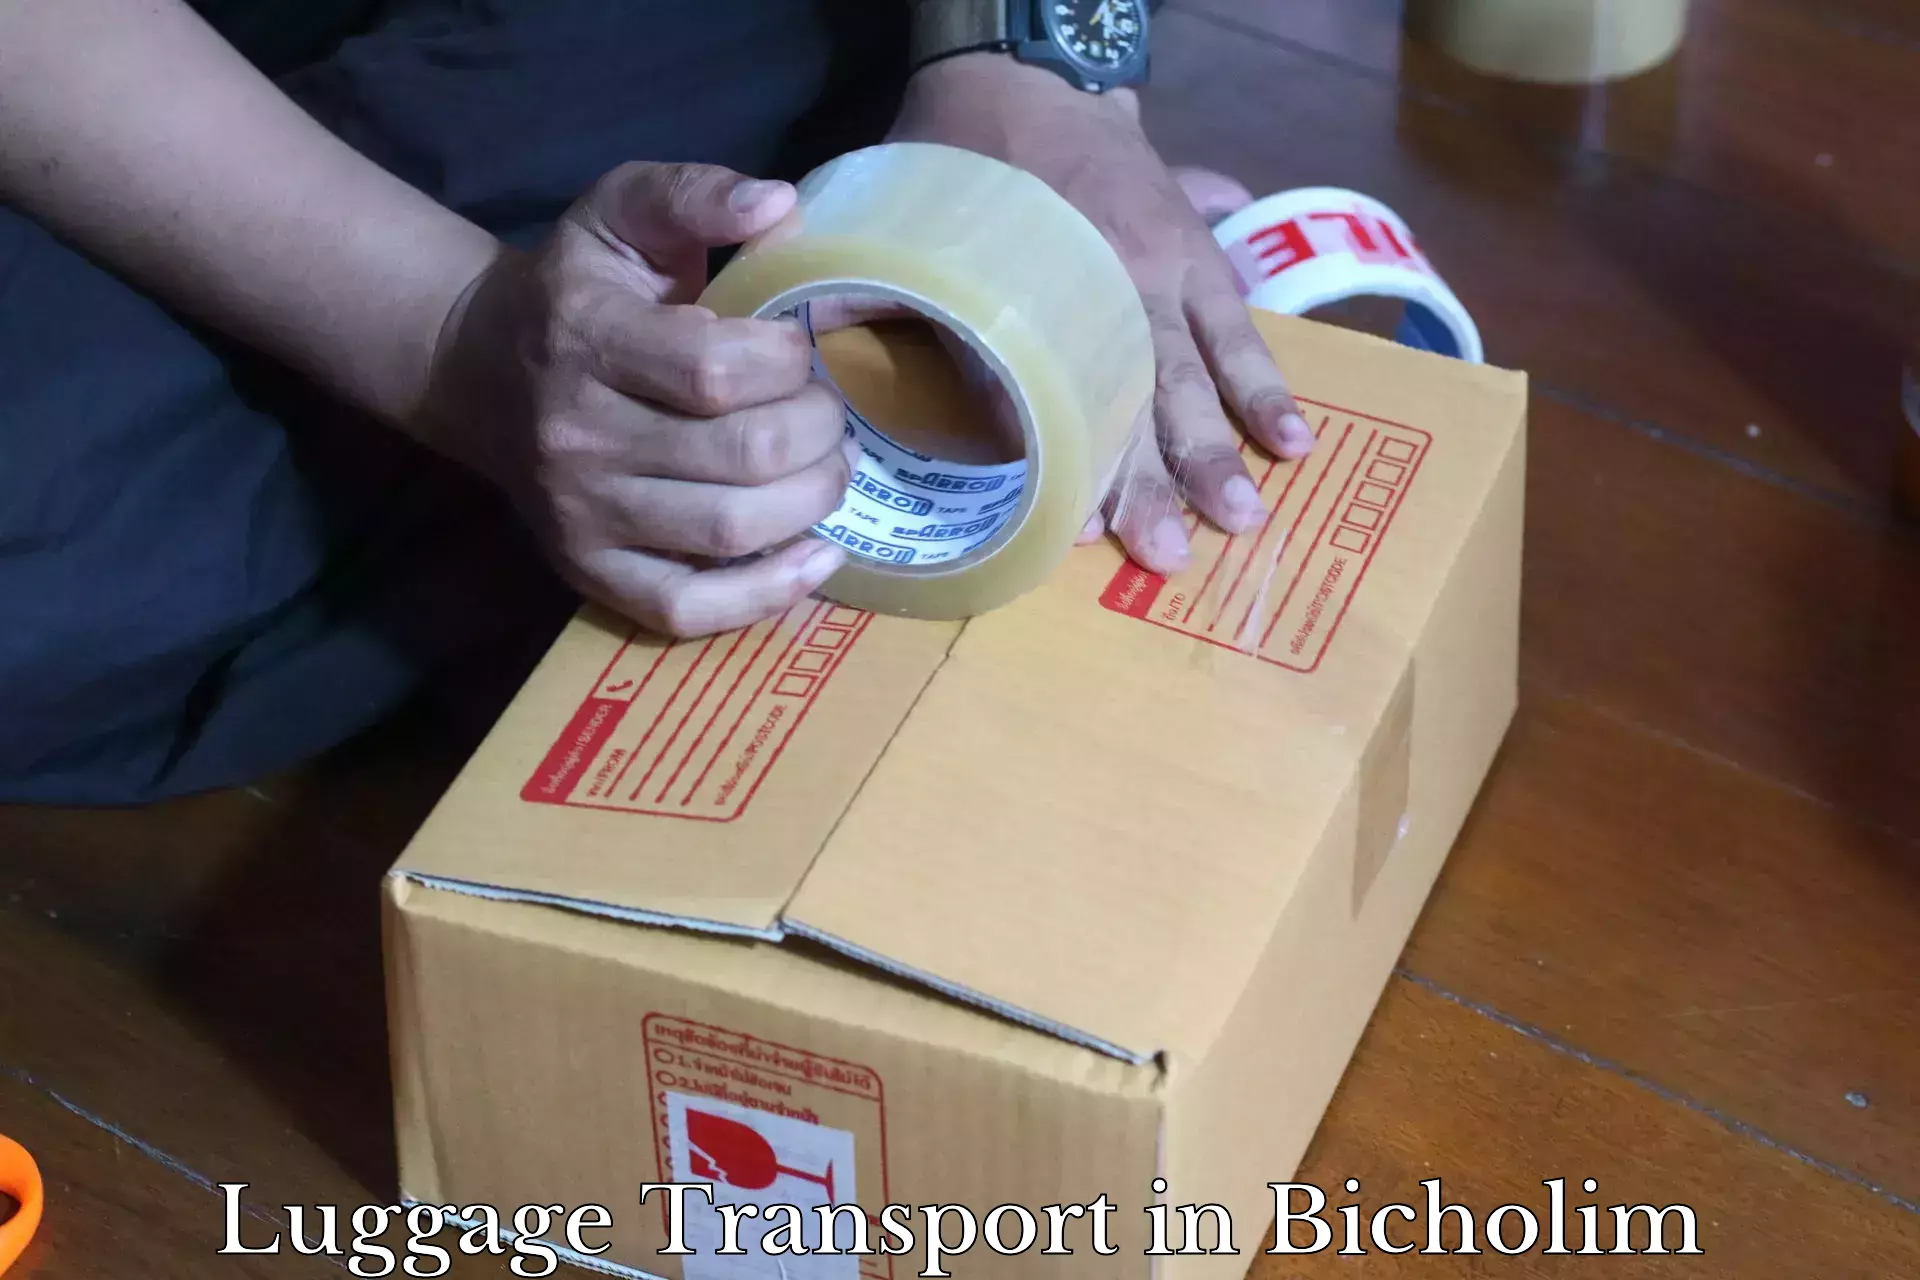 Luggage shipment processing in Bicholim